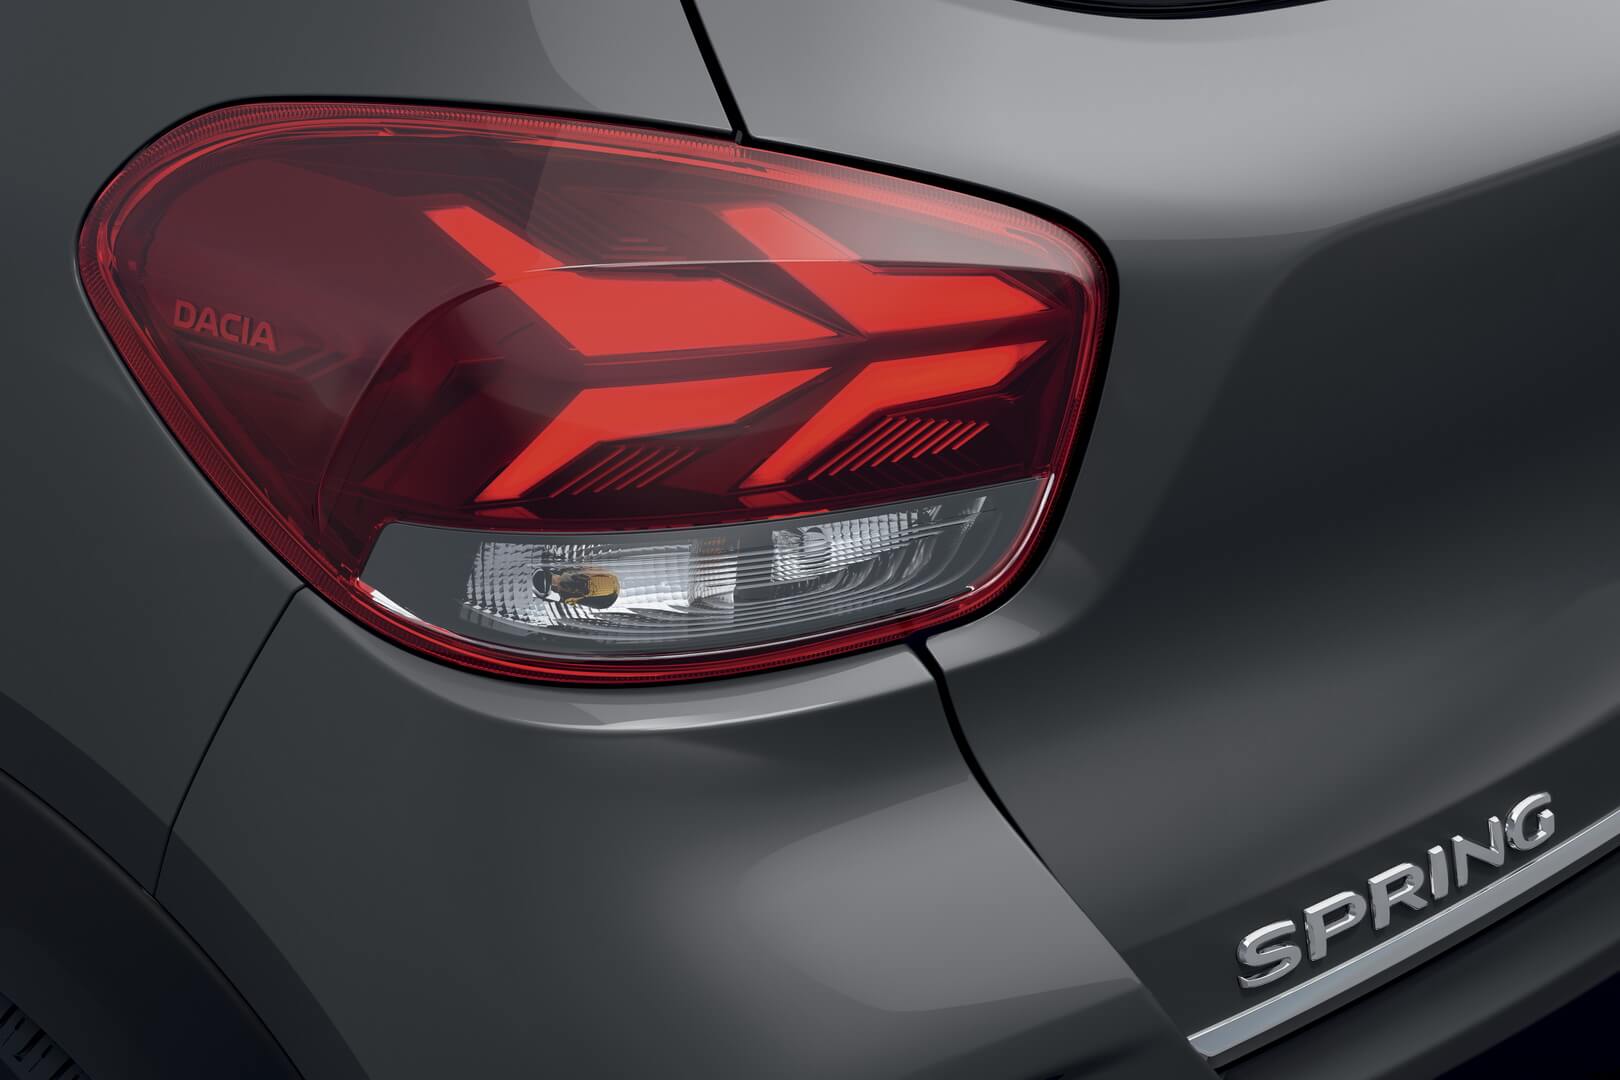 Задние фонари оснащены новой светодиодной подсветкой Dacia Y-образной формы